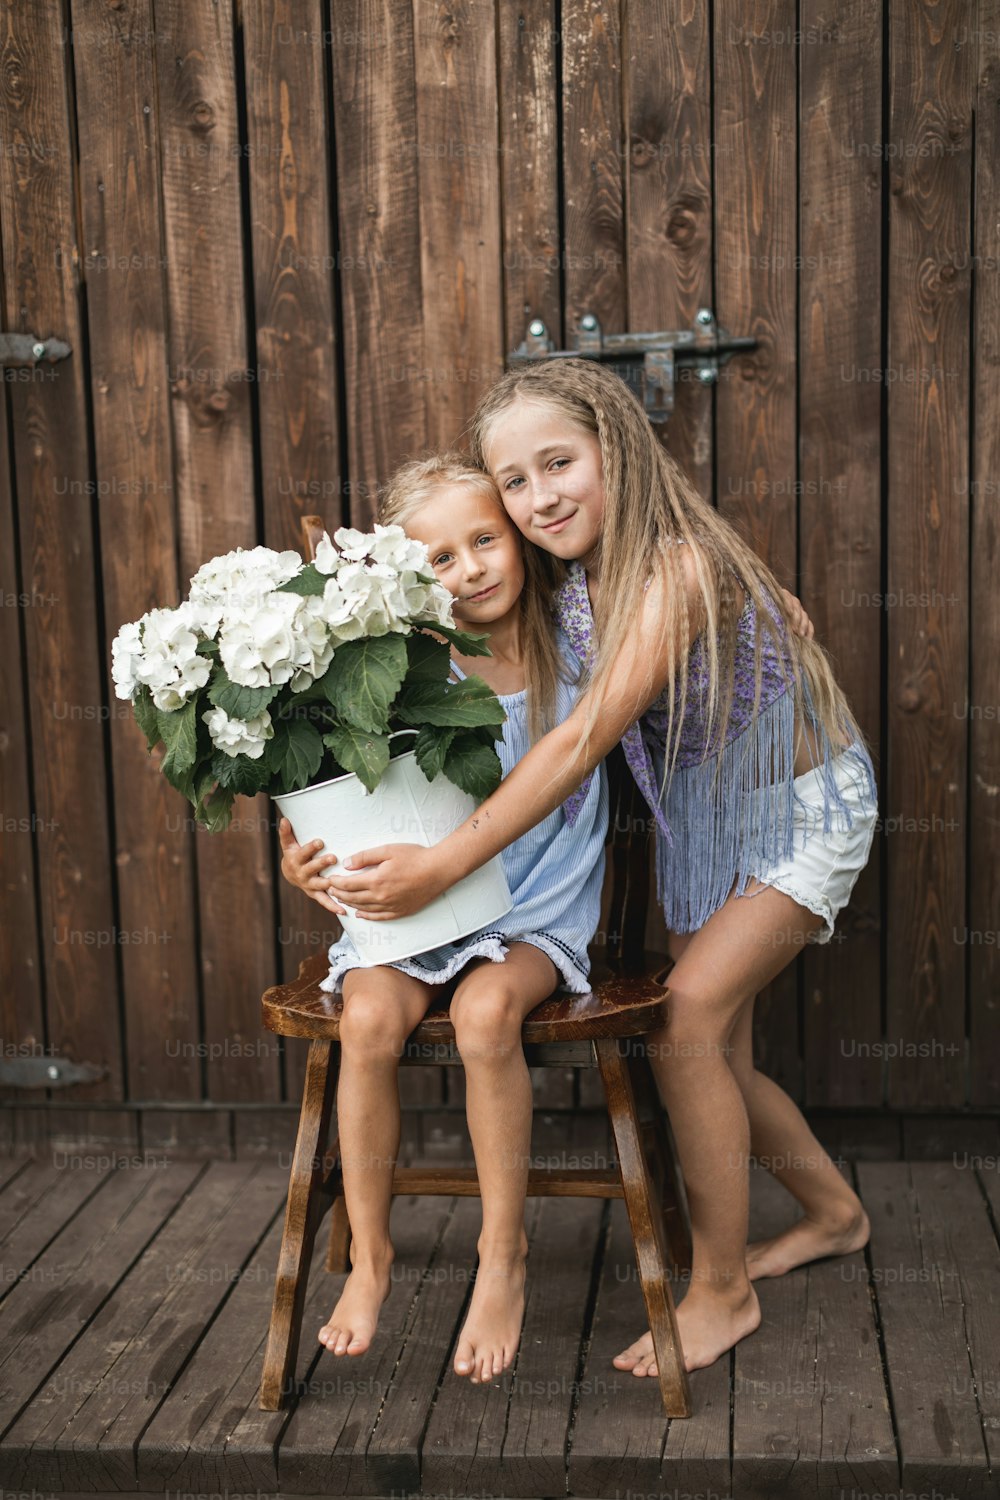 木製の納屋の壁の背景に幸せな笑顔の女の子の姉妹、一人の女の子がアジサイの花束を持って木製の椅子に座っていて、別の女の子が近くに立って抱きしめています。